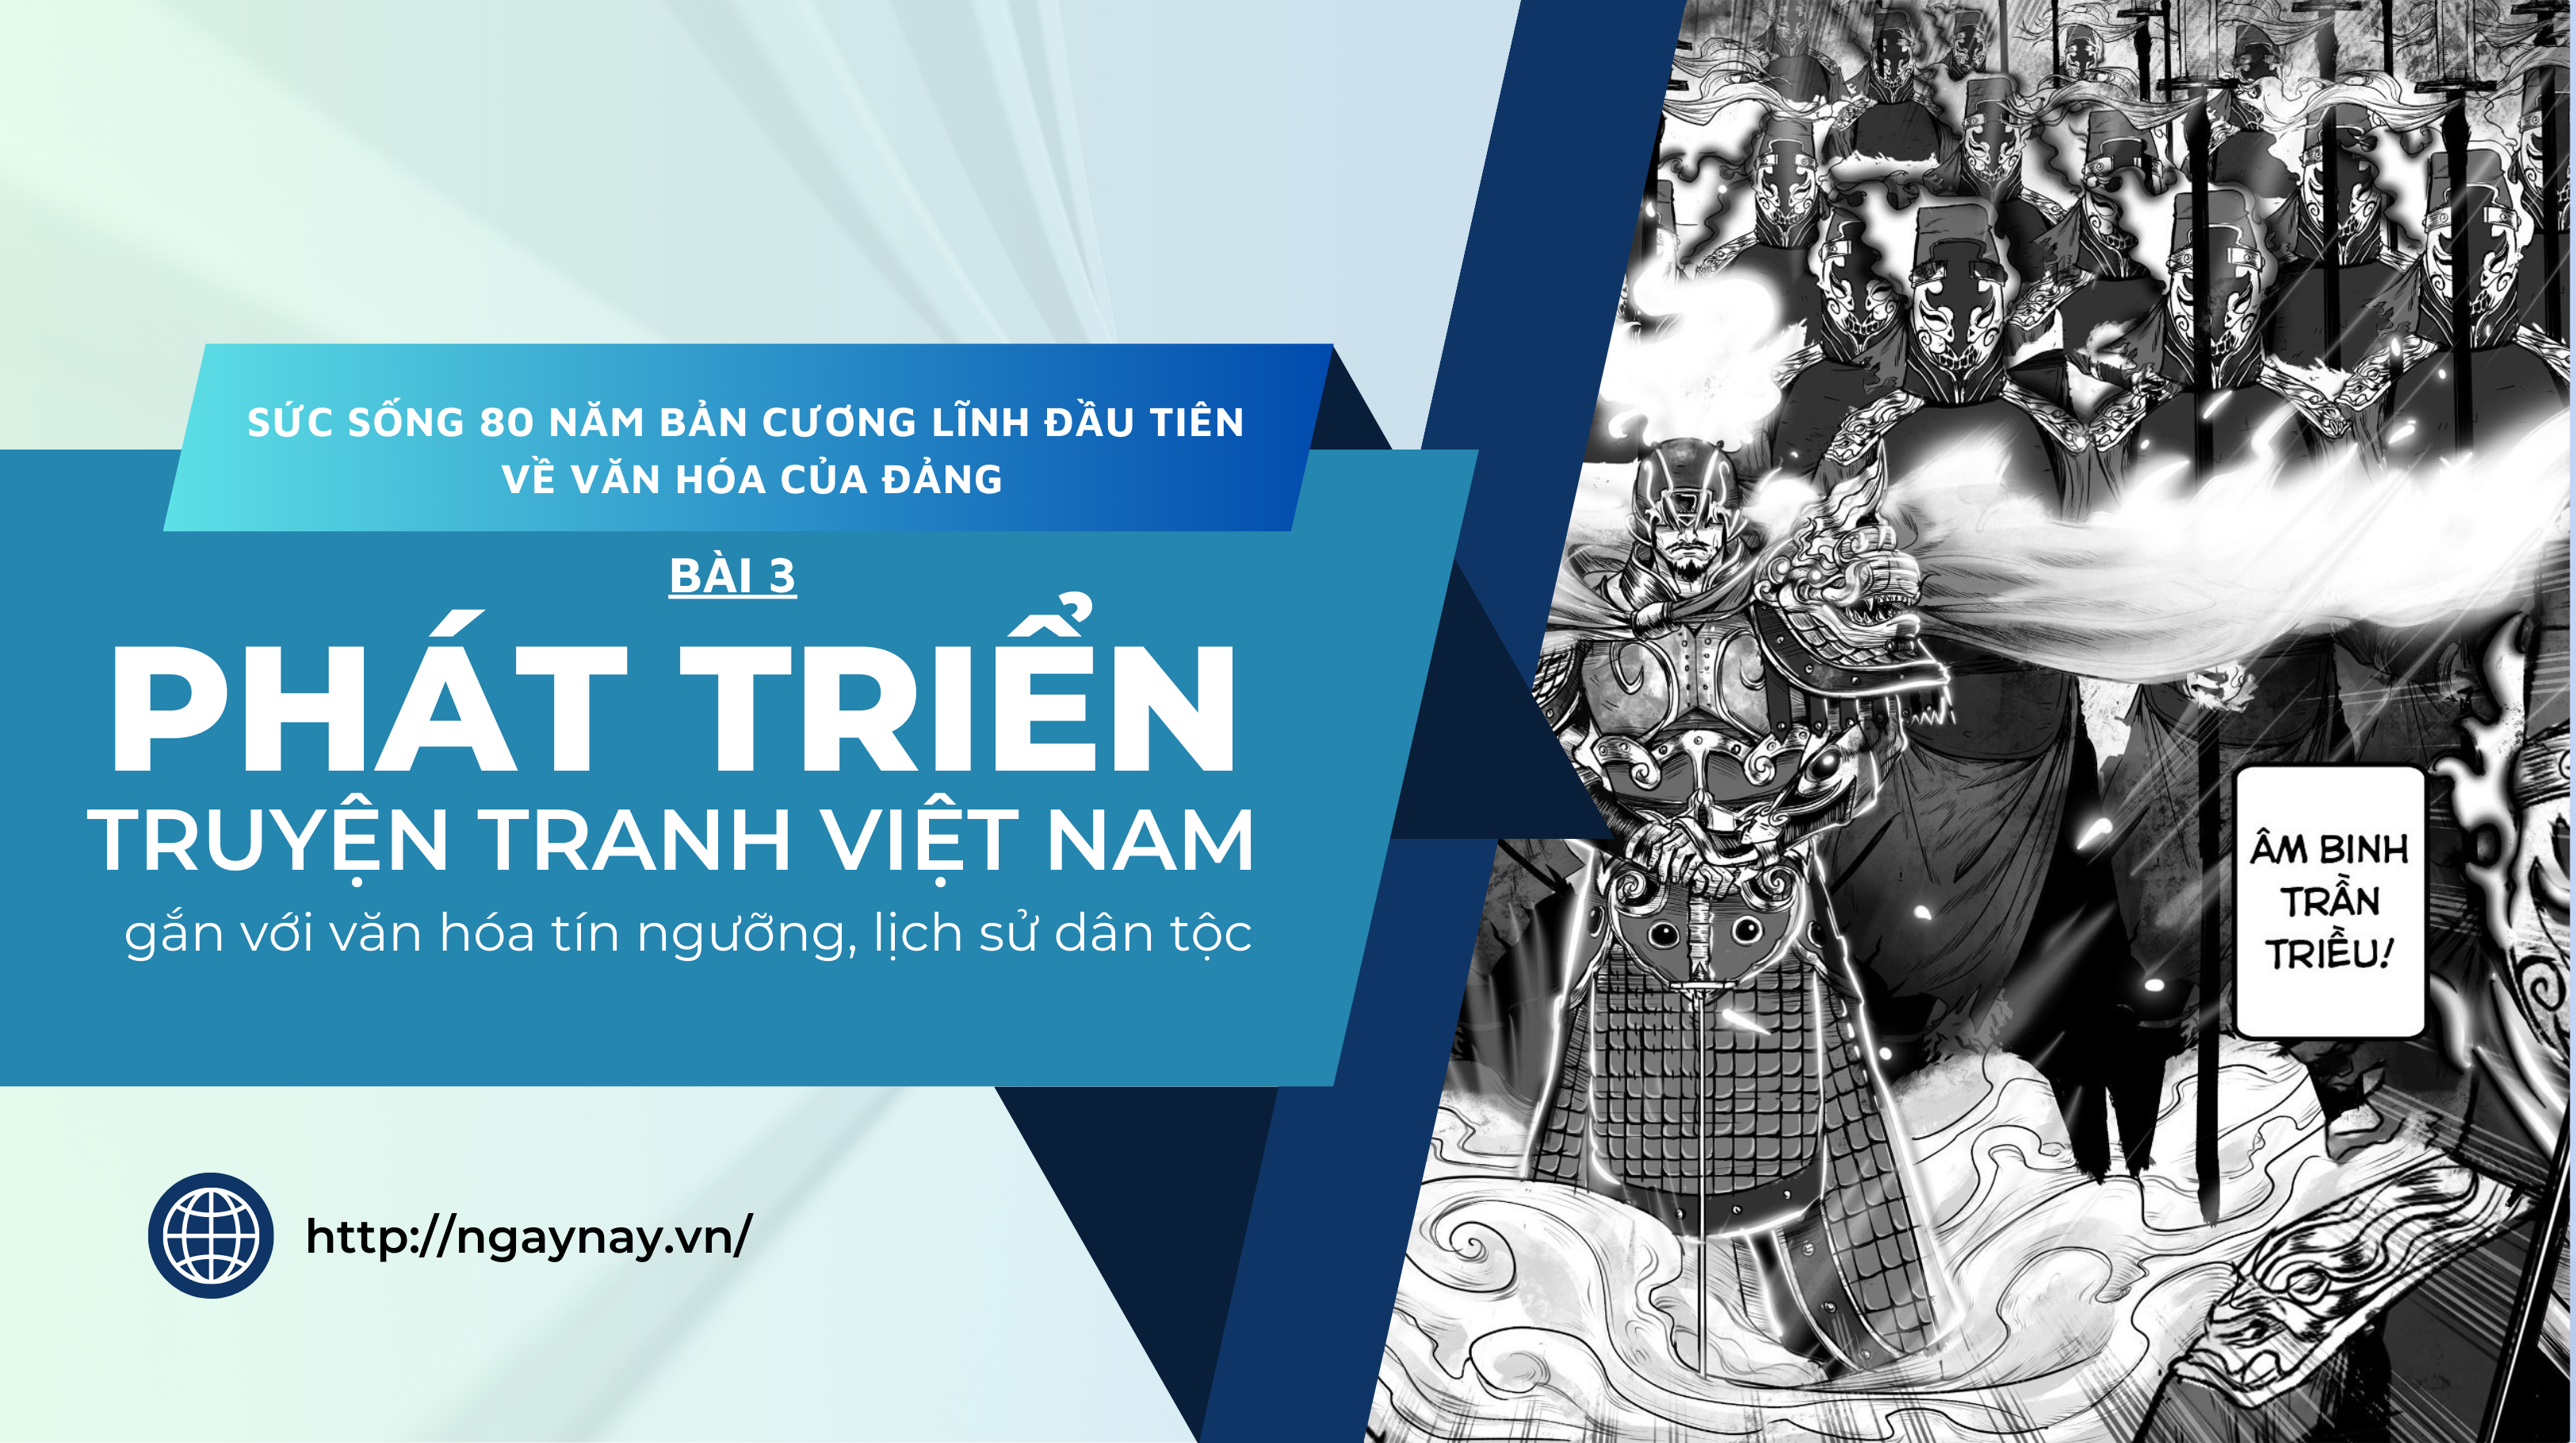 Sức sống 80 năm bản Cương lĩnh đầu tiên về văn hóa của Đảng- Bài 3: Phát triển truyện tranh Việt Nam